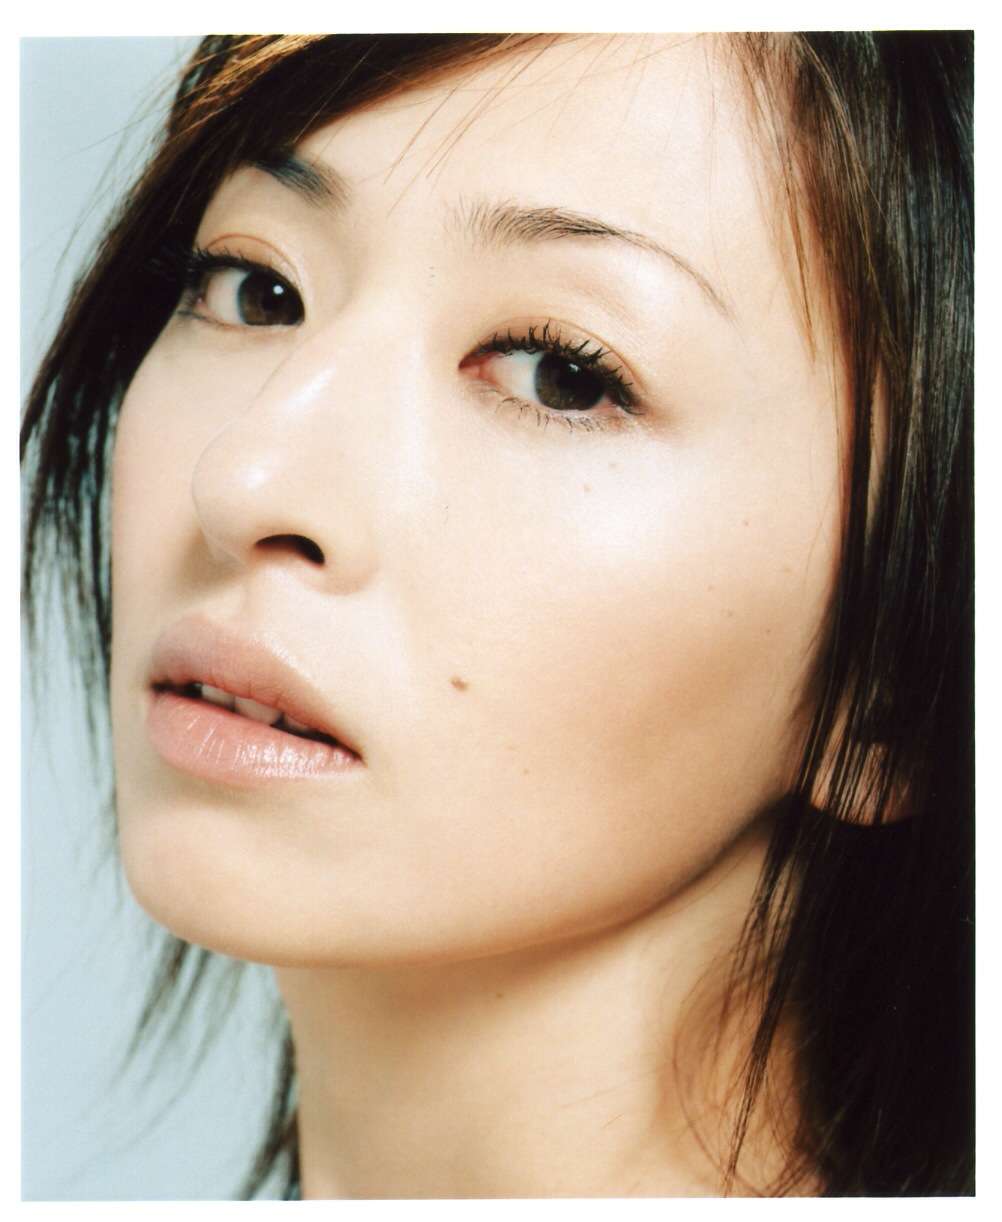 松雪泰子のパンチラエロ画像